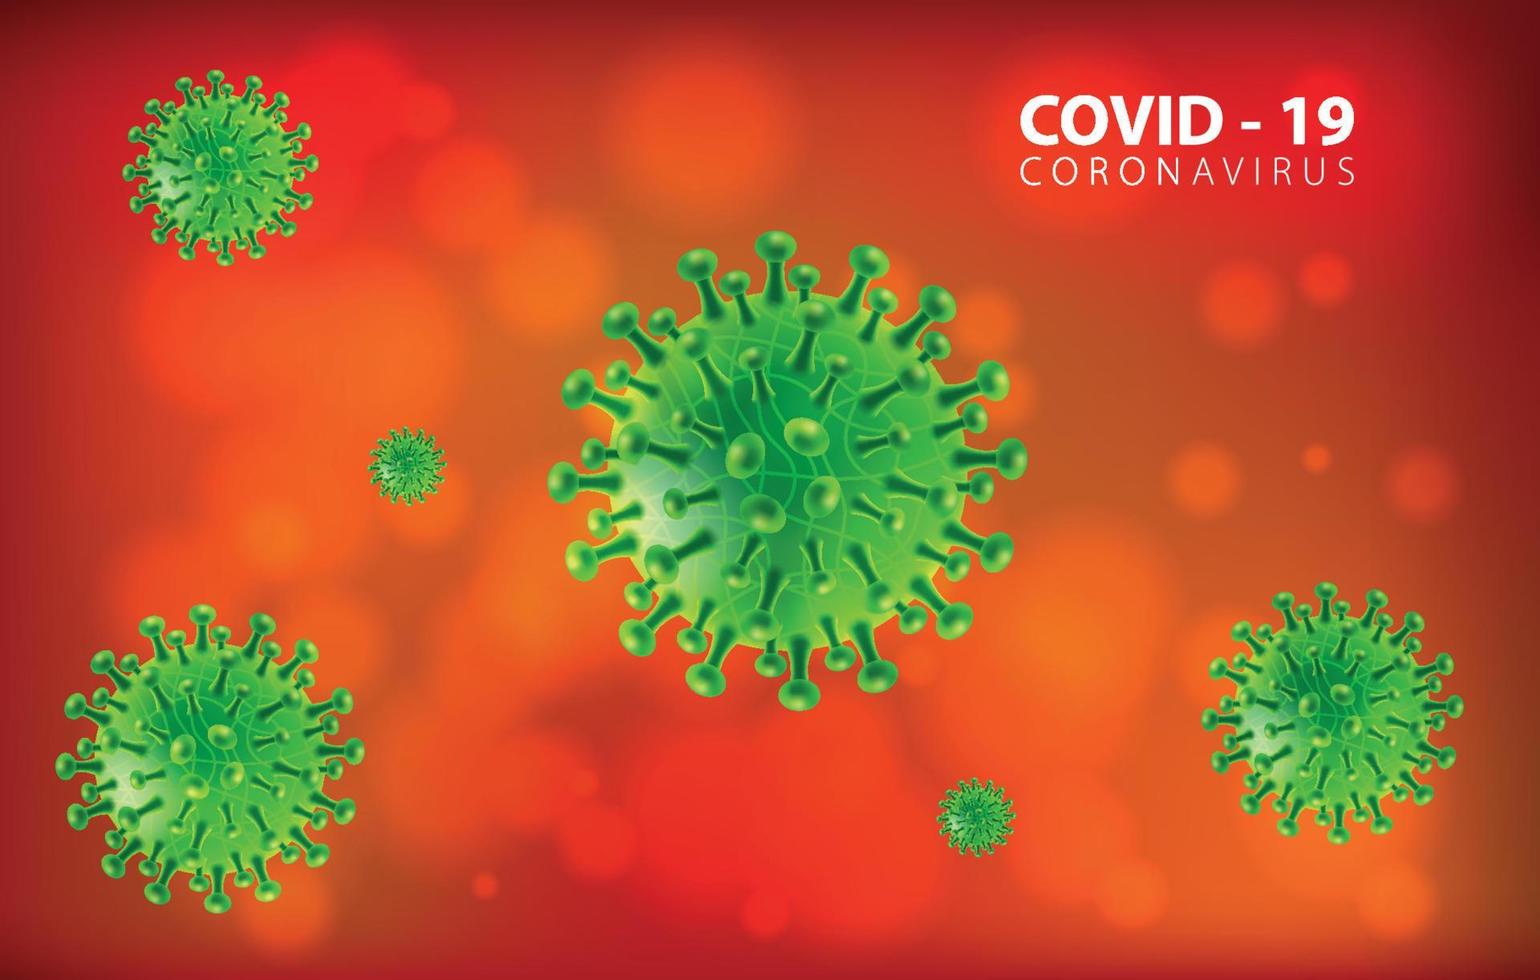 coronavirus ziekte covid-19 infectie medisch geïsoleerd. china pathogeen respiratoire influenza covid viruscellen. nieuwe officiële naam voor coronavirusziekte genaamd covid-19, vectorillustratie vector